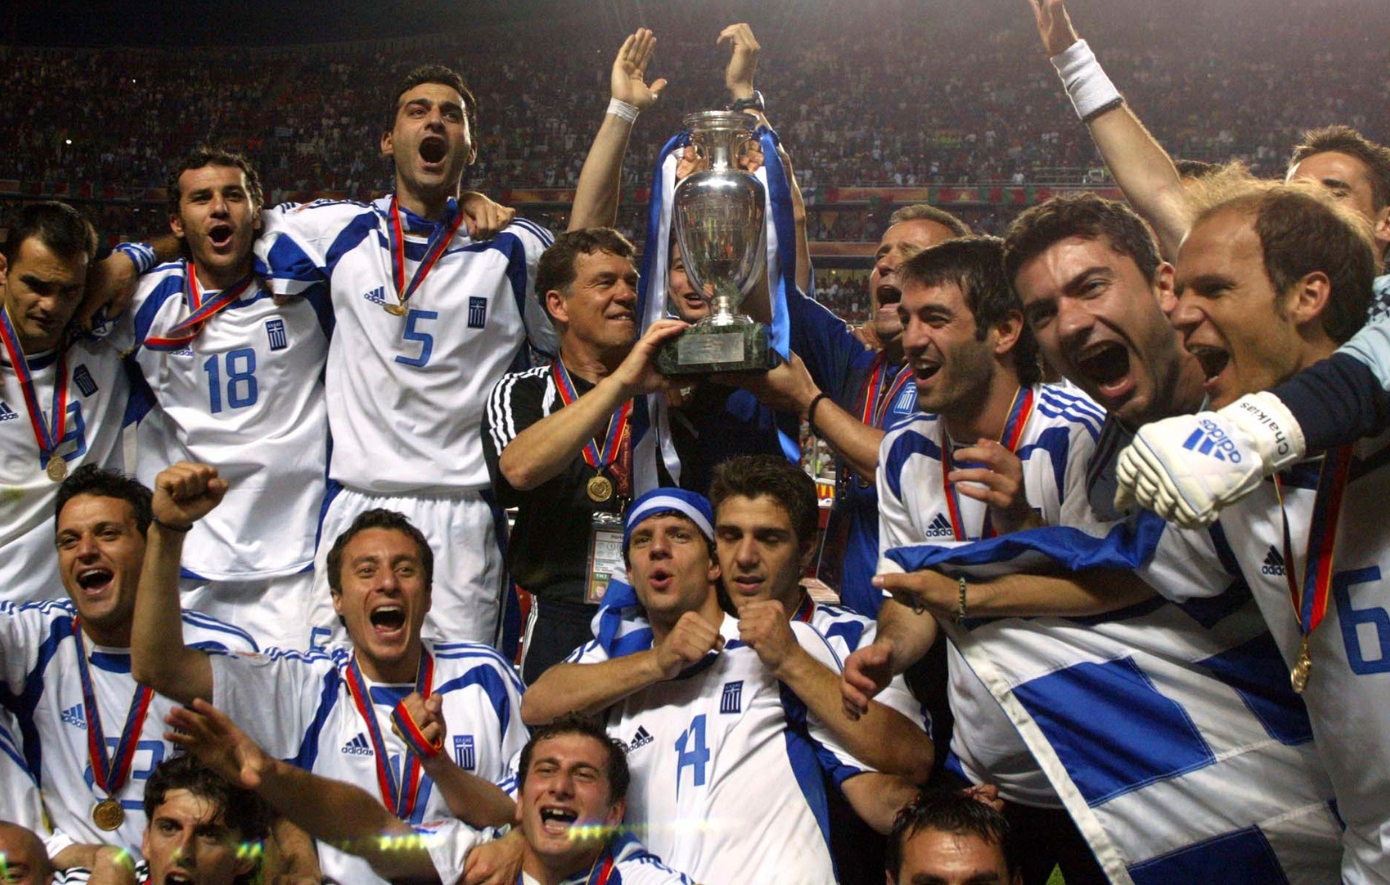 Σαν σήμερα 4 Ιουλίου: Η Εθνική σηκώνει το κύπελλο στο Euro 2004 και οι Έλληνες βγαίνουν στους δρόμους πανηγυρίζοντας σαν μικρά παιδιά